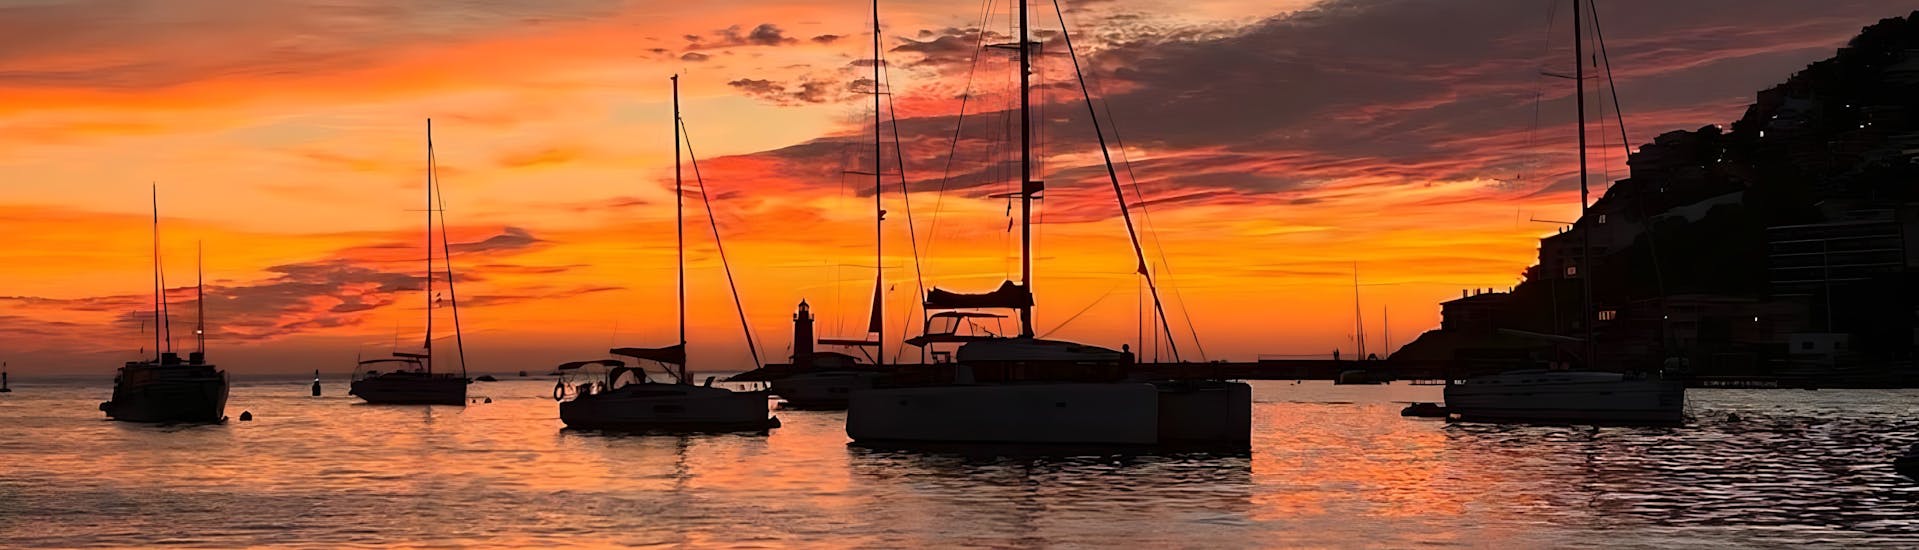 Giro privato in barca a vela a Port Andratx al tramonto.